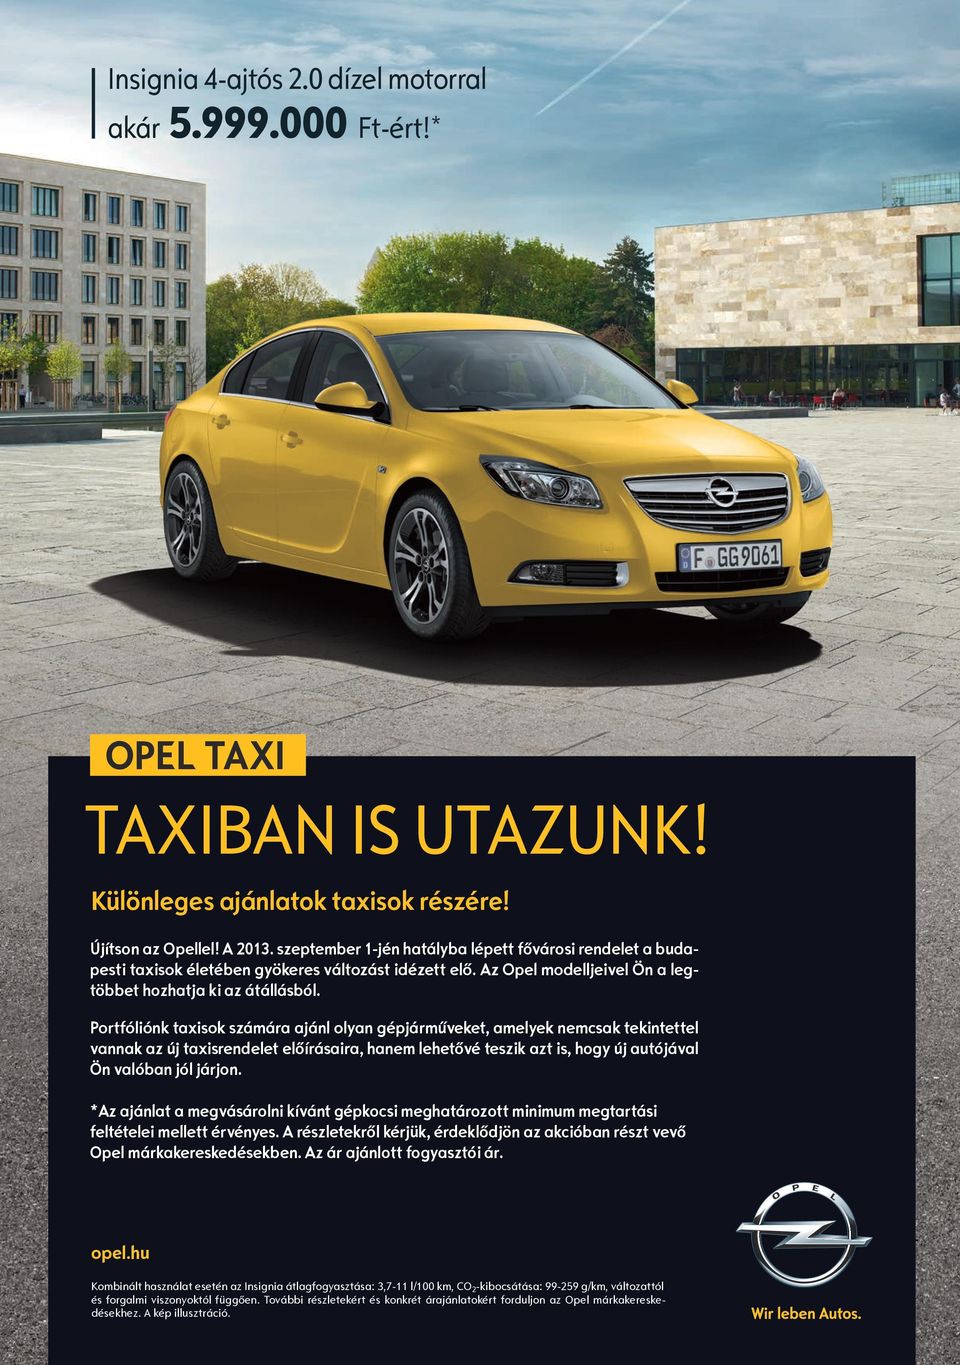 Portfóliónk taxisok számára ajánl olyan gépjárműveket, amelyek nemcsak tekintettel vannak az új taxisrendelet előírásaira, hanem lehetővé teszik azt is, hogy új autójával Ön valóban jól járjon.